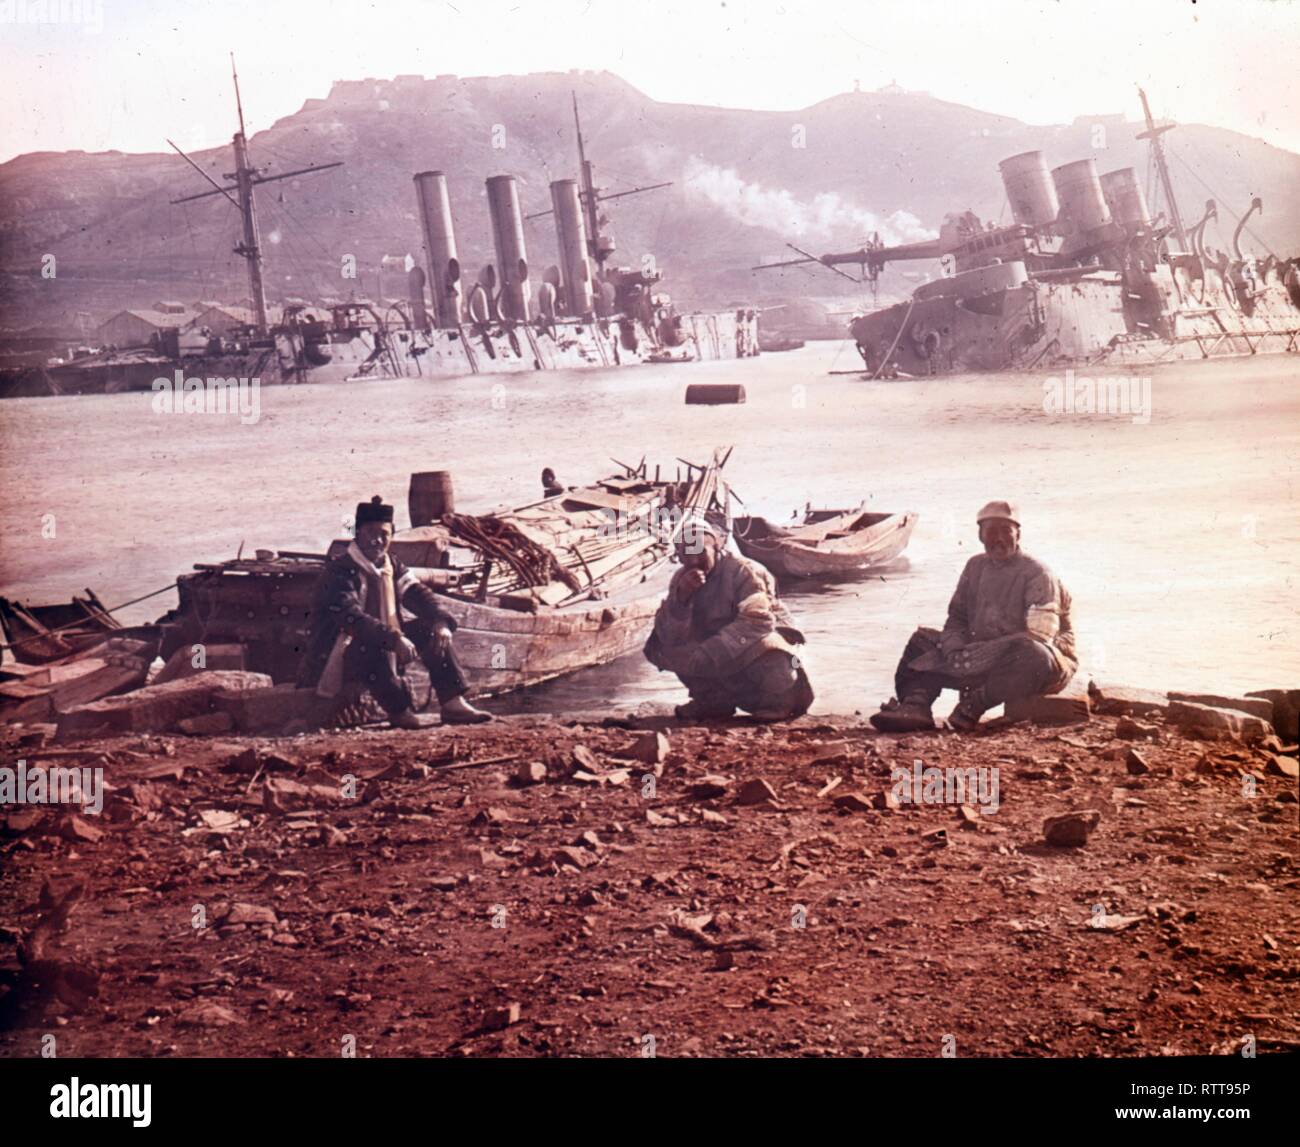 Foto coloreada de tres soldados japoneses sentados en una playa junto al puerto de Port Arthur cerca de un buque de guerra ruso hundido durante la Guerra Ruso-Japonesa, Port Arthur, China, 1905. (Foto de Burton Holmes) Foto de stock